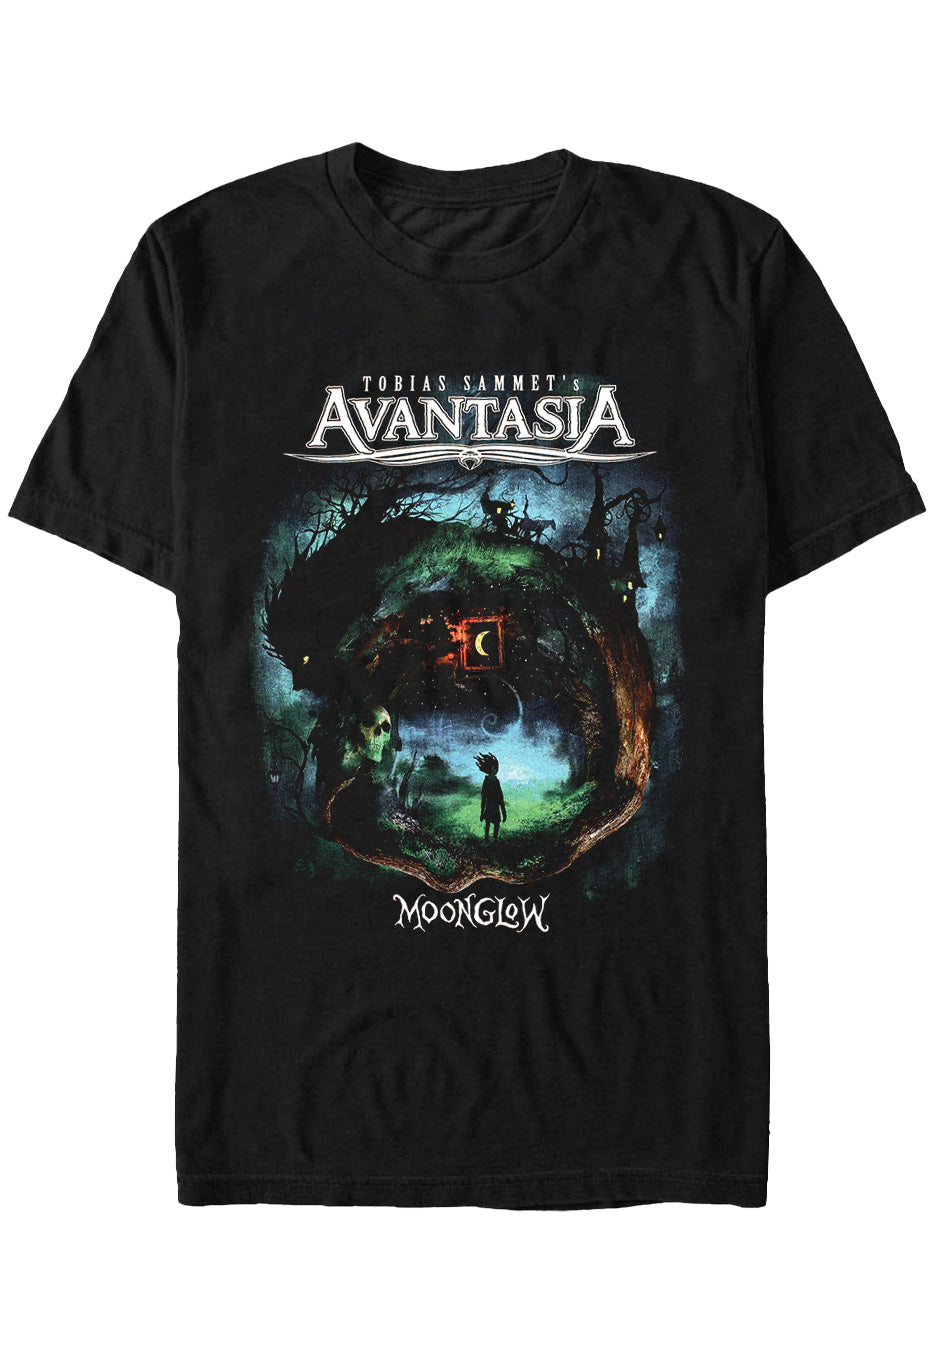 Avantasia - Moonglow Tour 2019 - T-Shirt